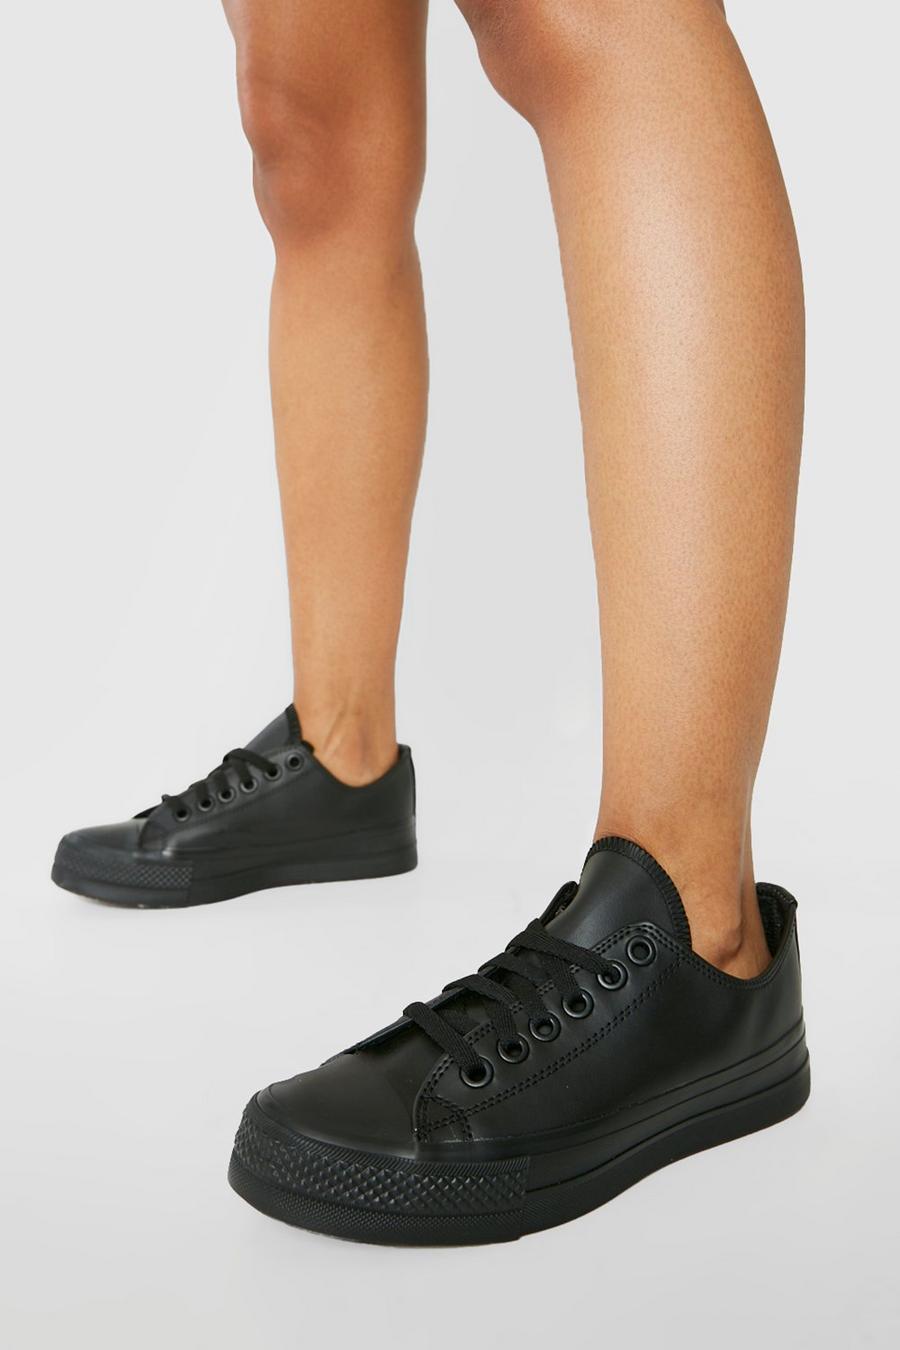 Zapatillas bajas de cuero sintético con suela gruesa, Black negro